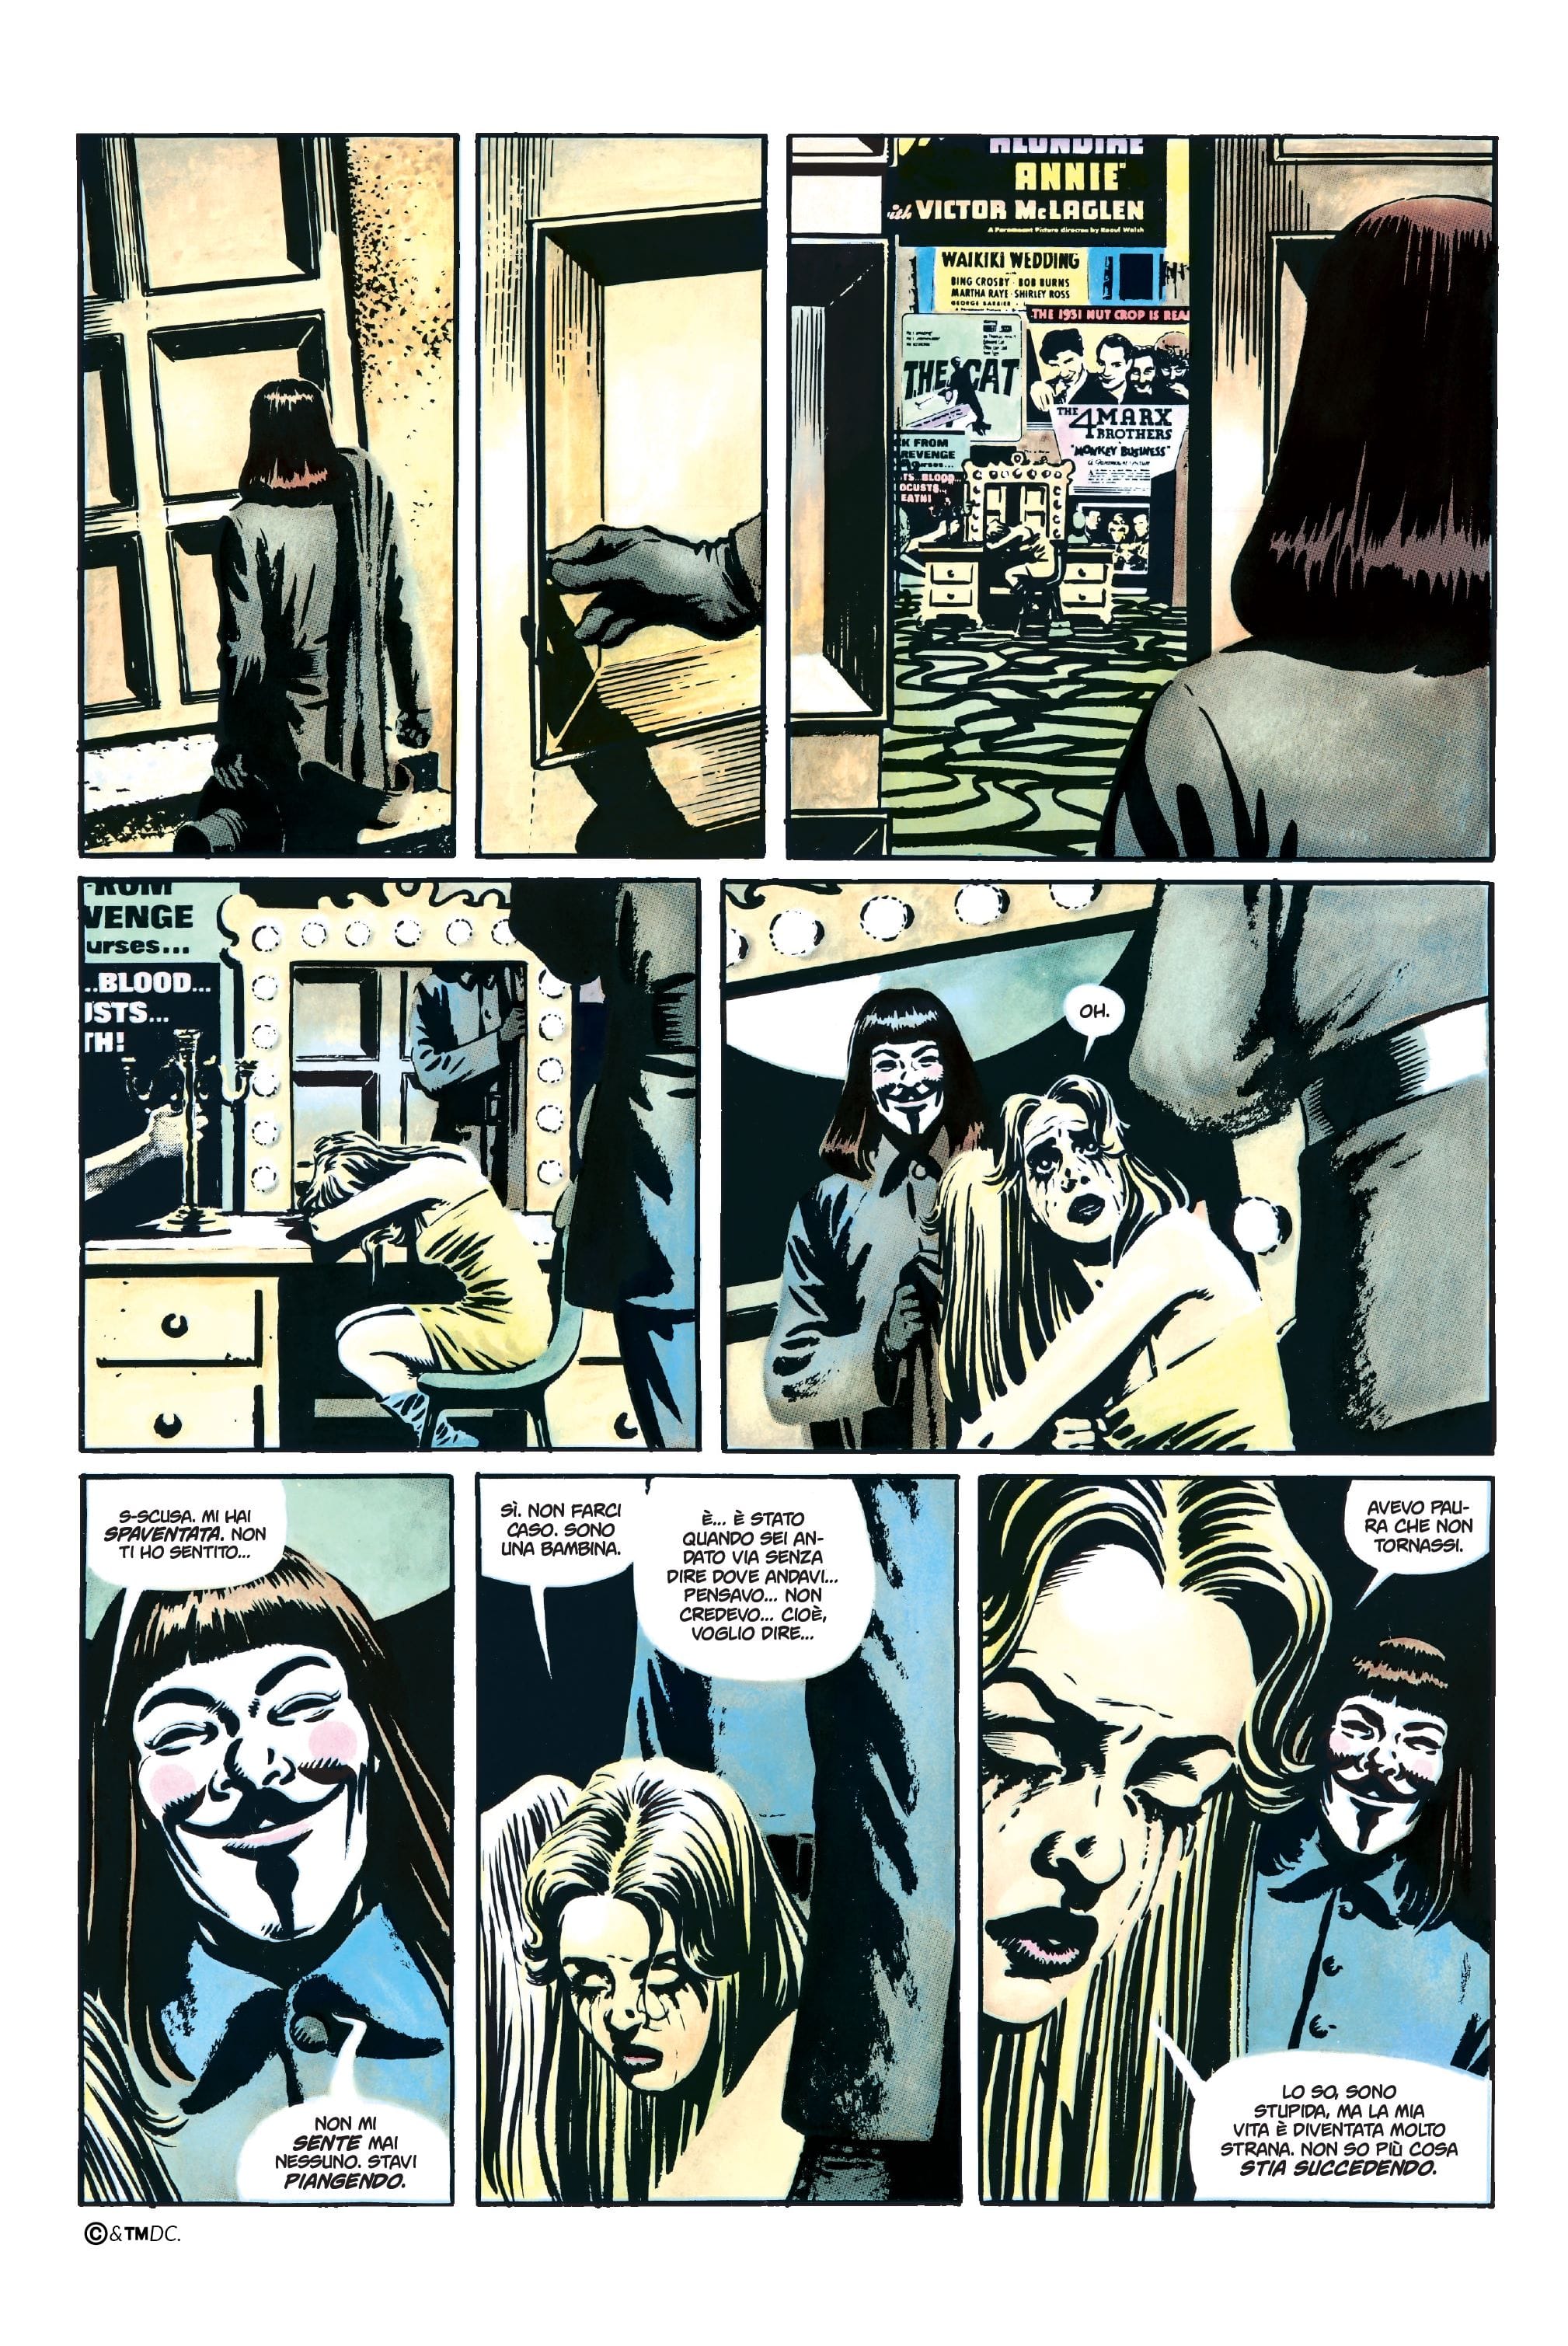 Immagine tratta da V per Vendetta, edizione Absolute, DC Comics Panini